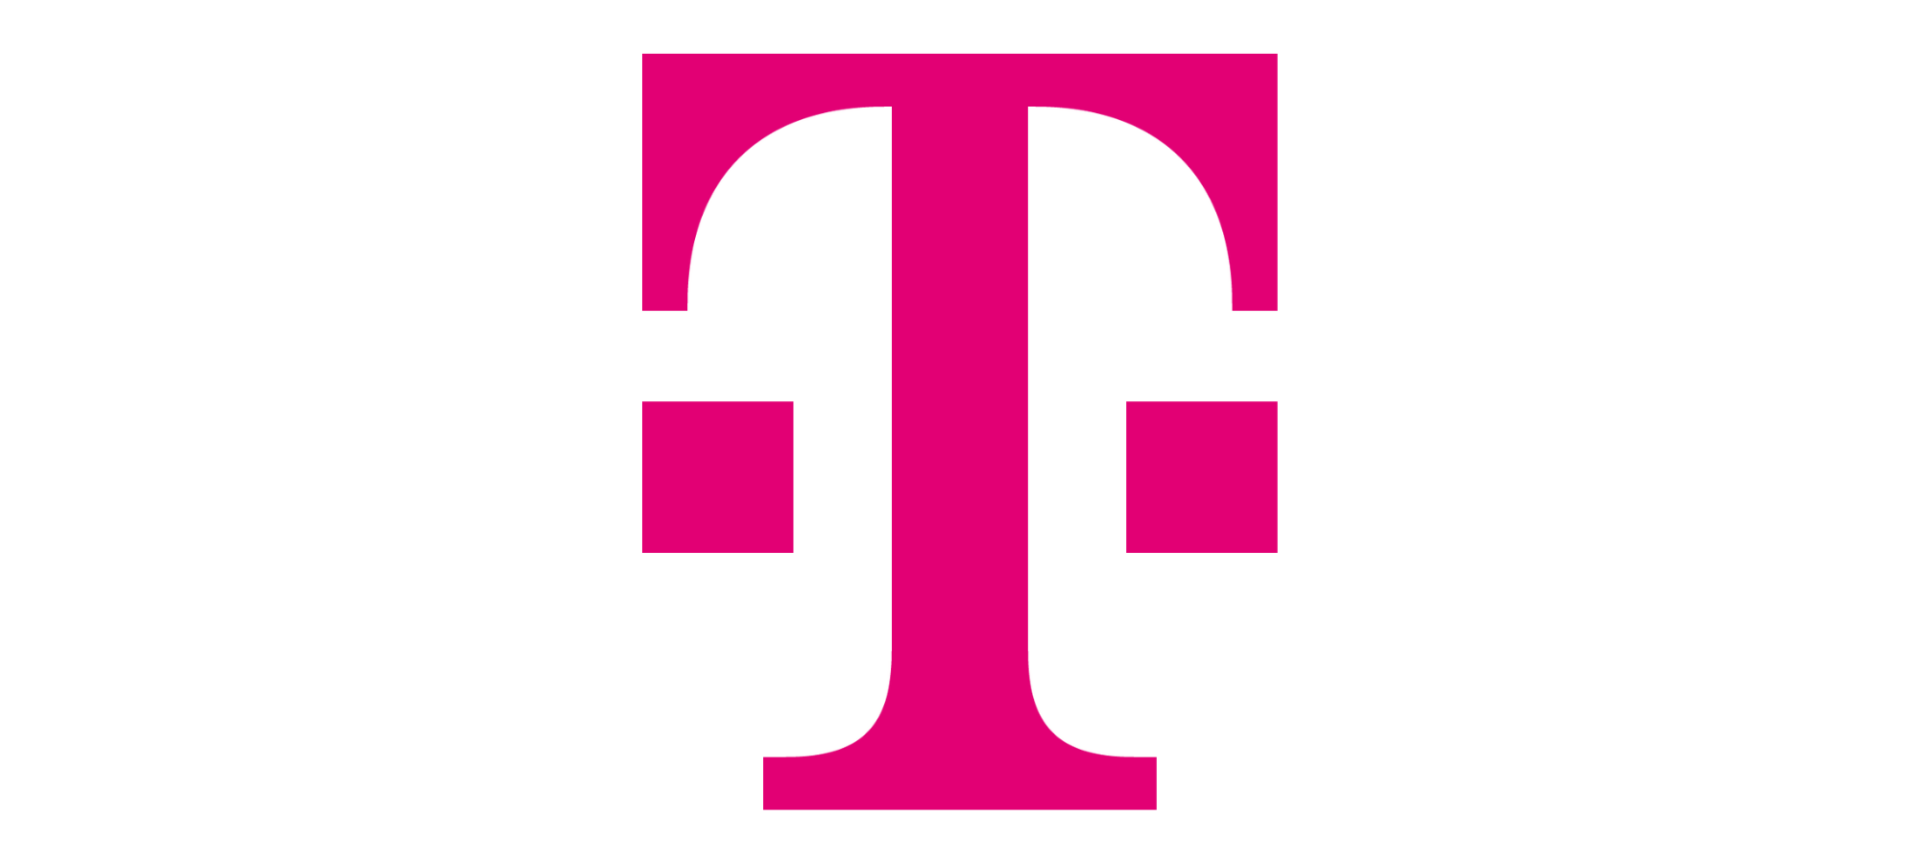 telekom Deutschland koblenz logo